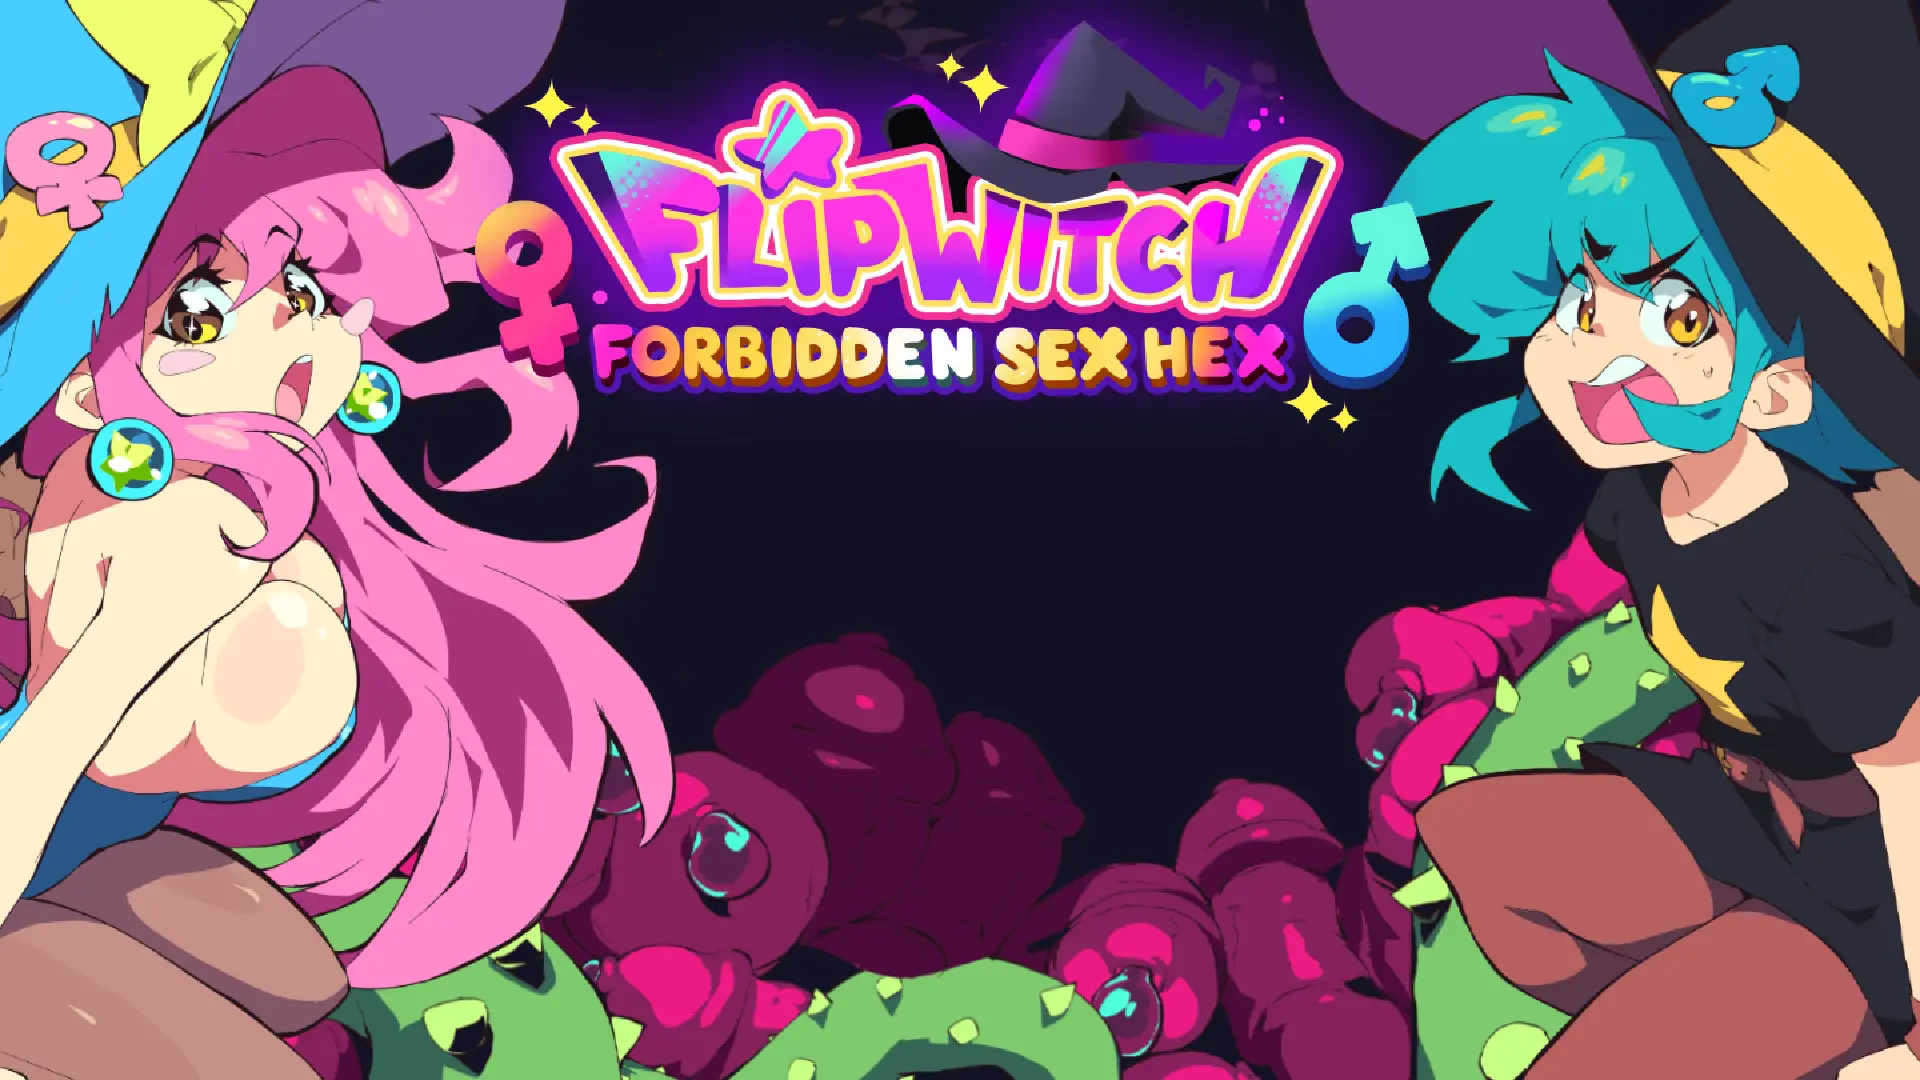 FlipWitch - Forbidden Sex Hex main image